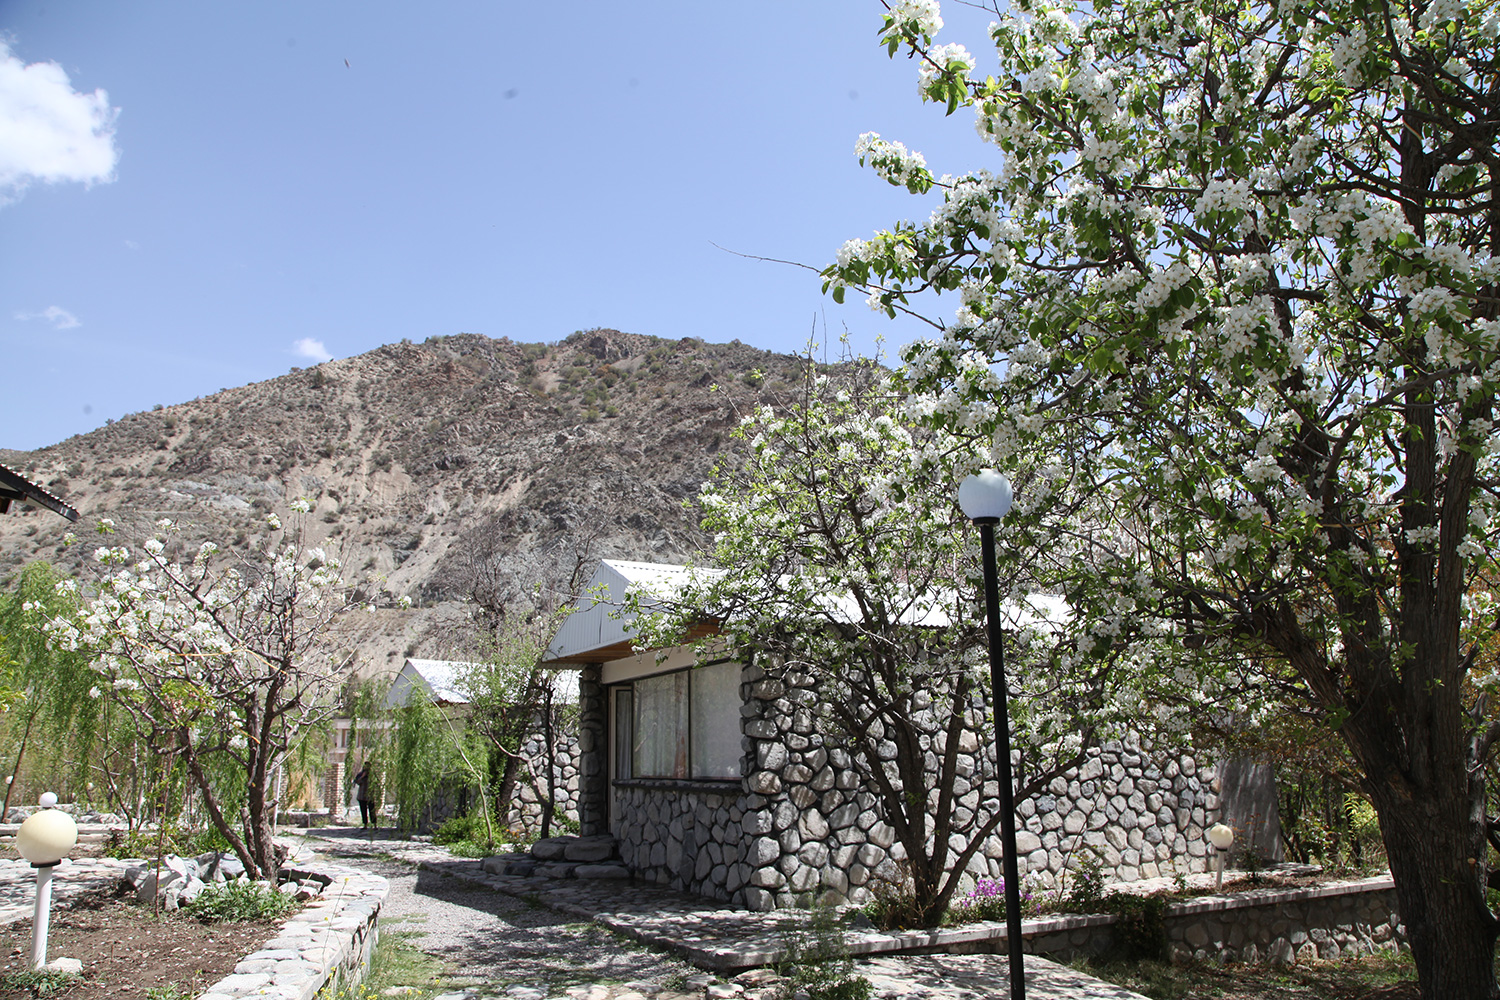 دَلفارد روستایی مدیترانه ای در کرمان